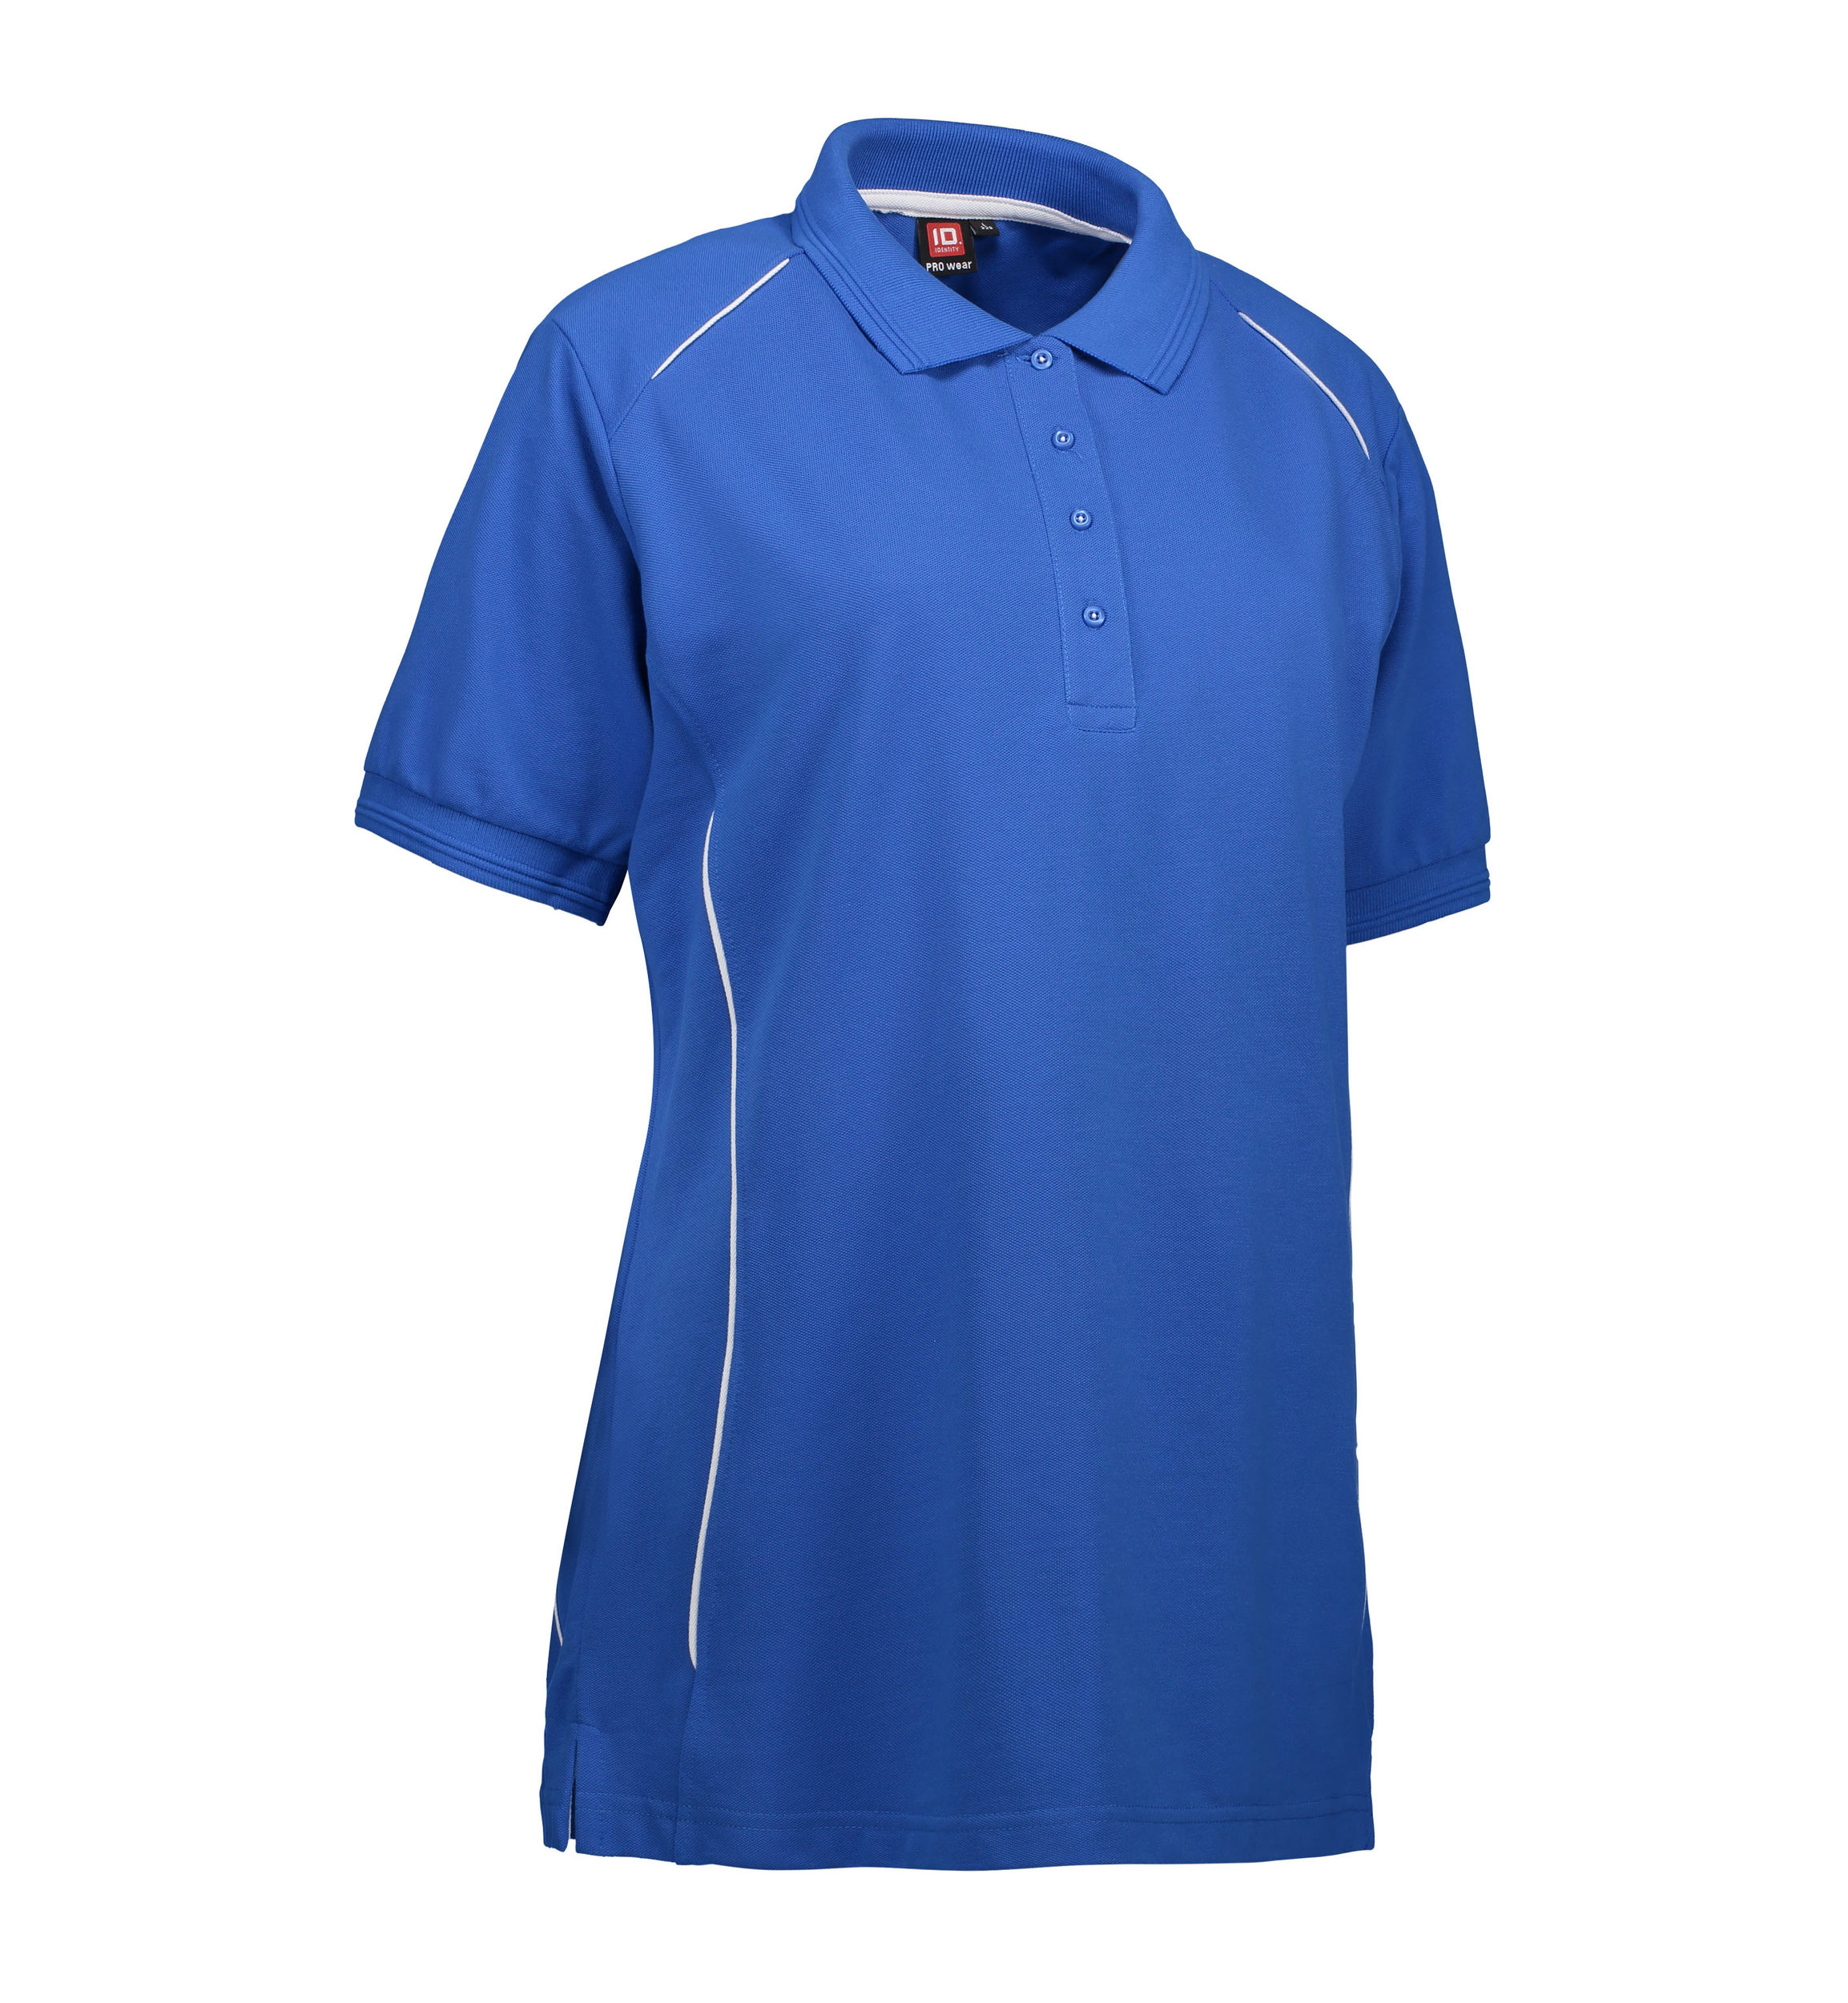 Se Slidstærk polo t-shirt i blå til damer - XS hos Sygeplejebutikken.dk